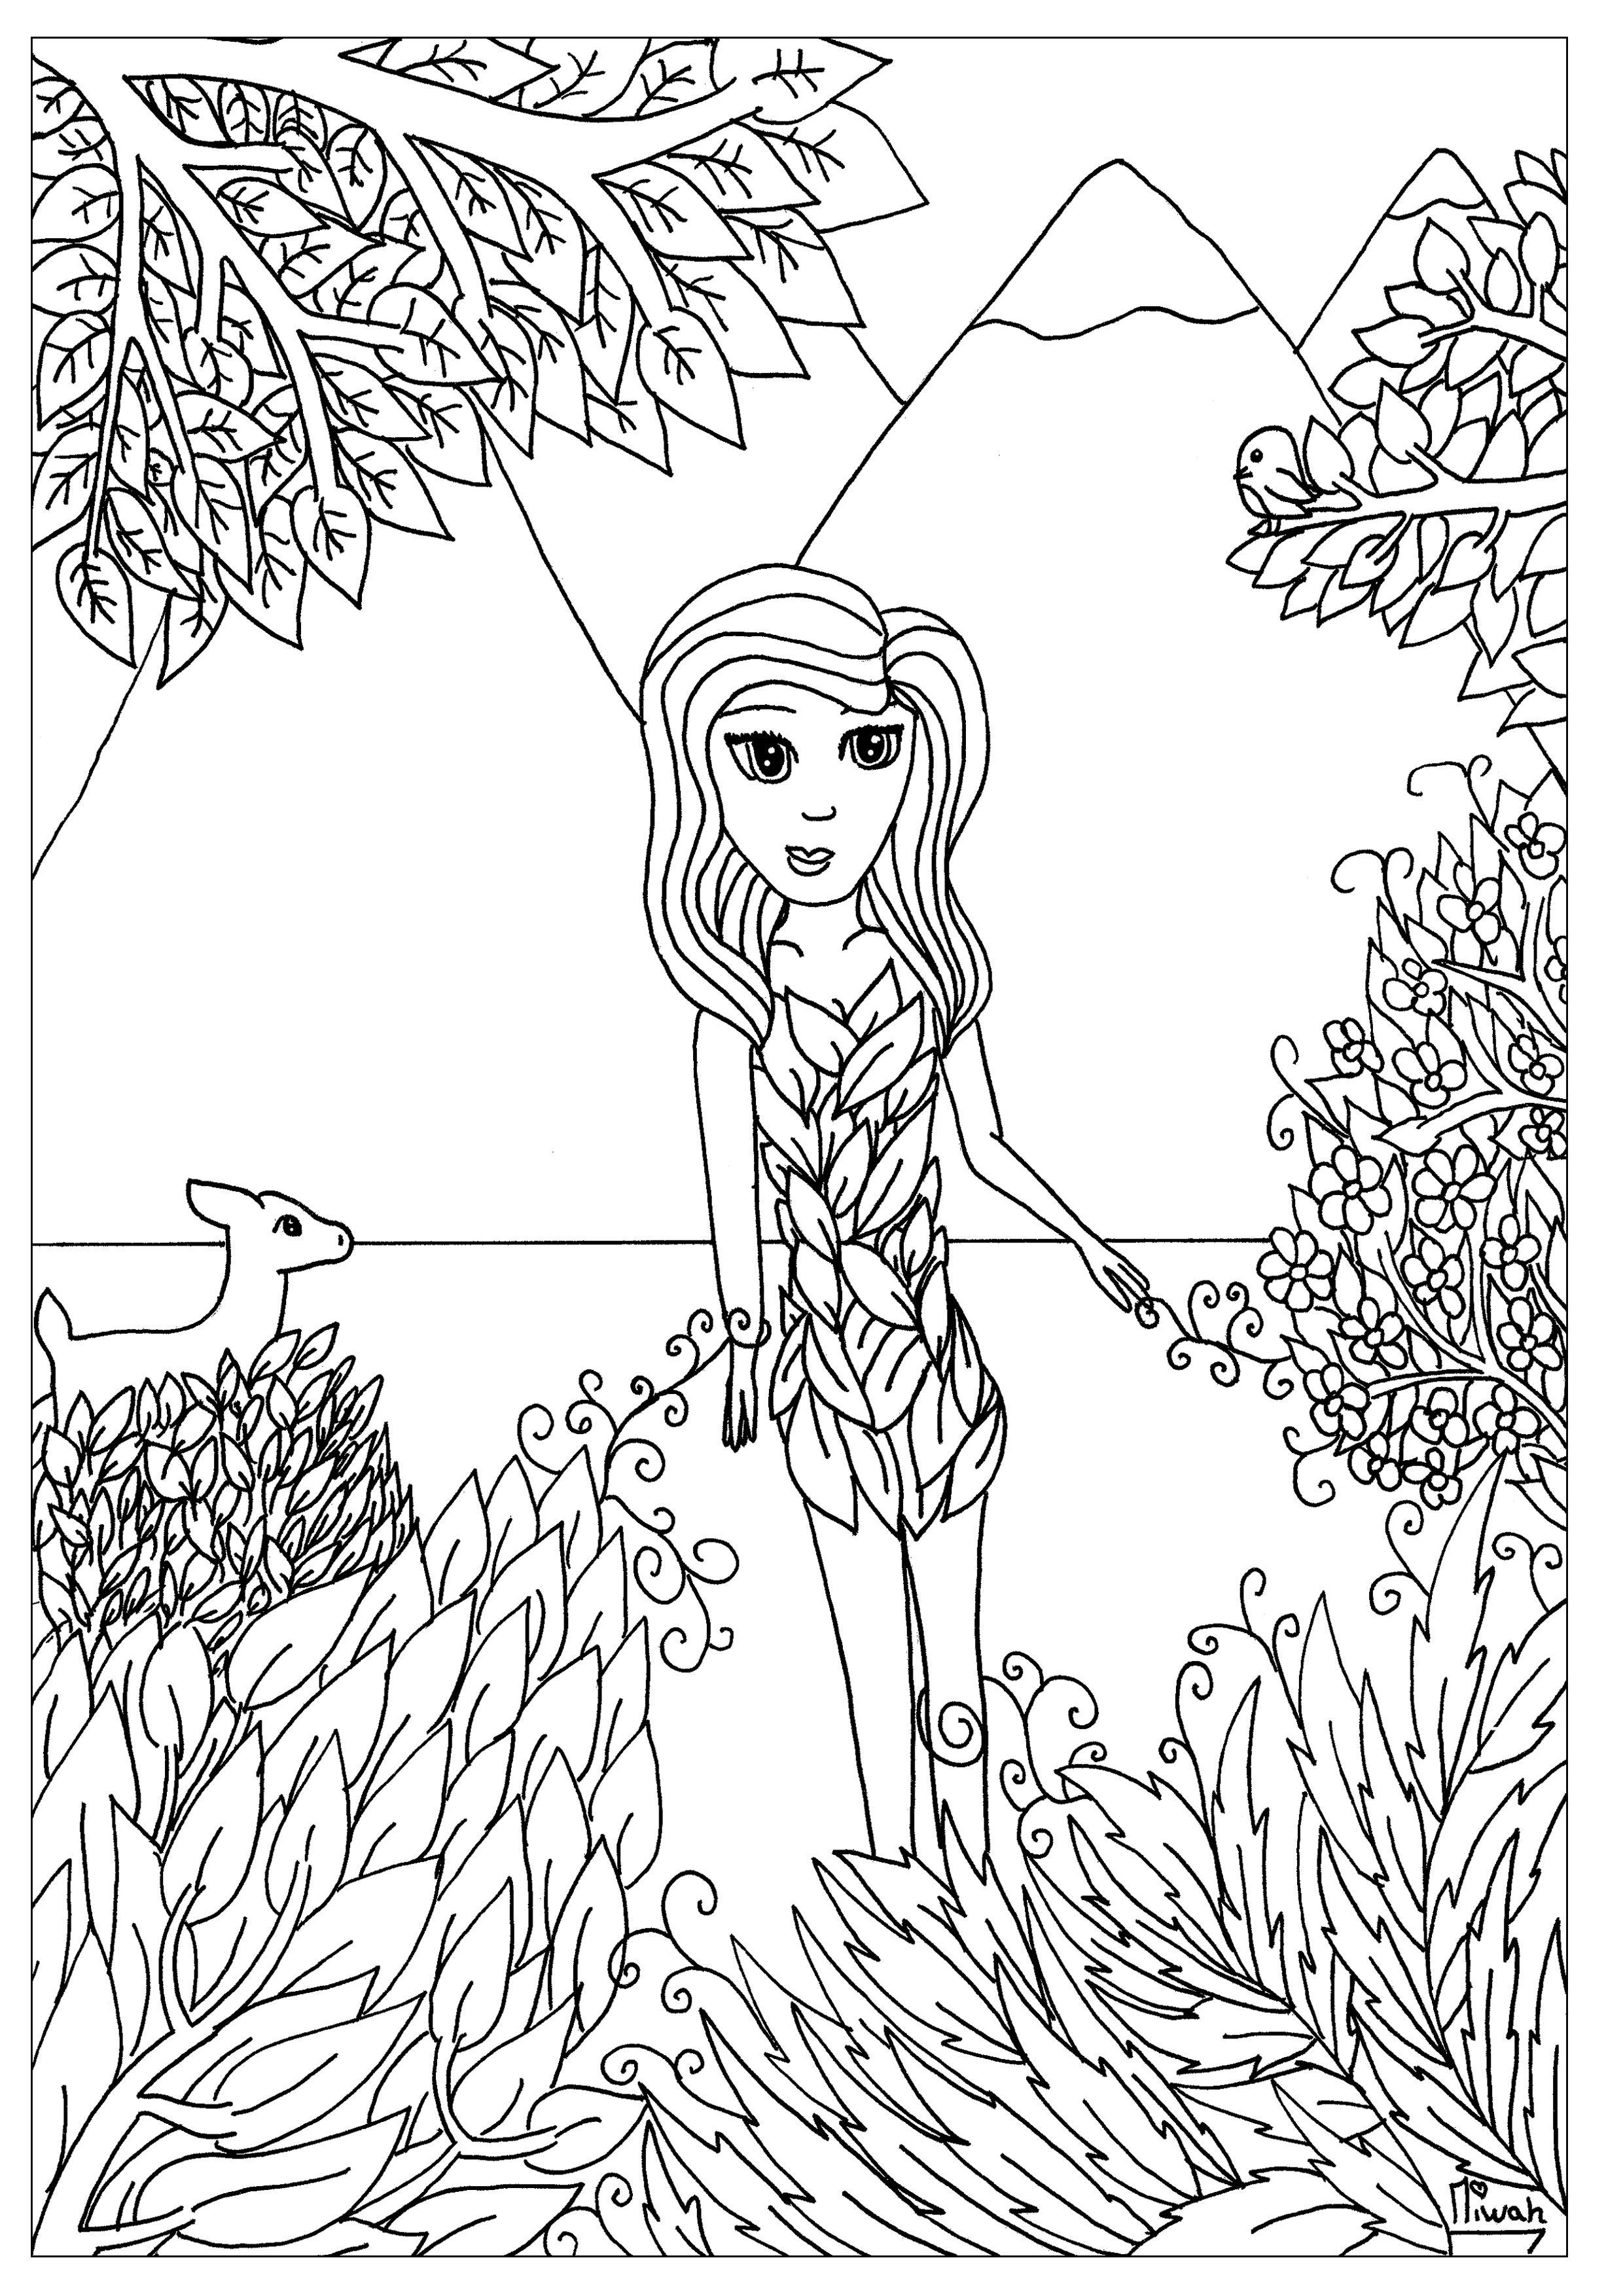 Mulher Flor, um desenho para colorir com um estilo simples mas cativante, Artista : Miwah